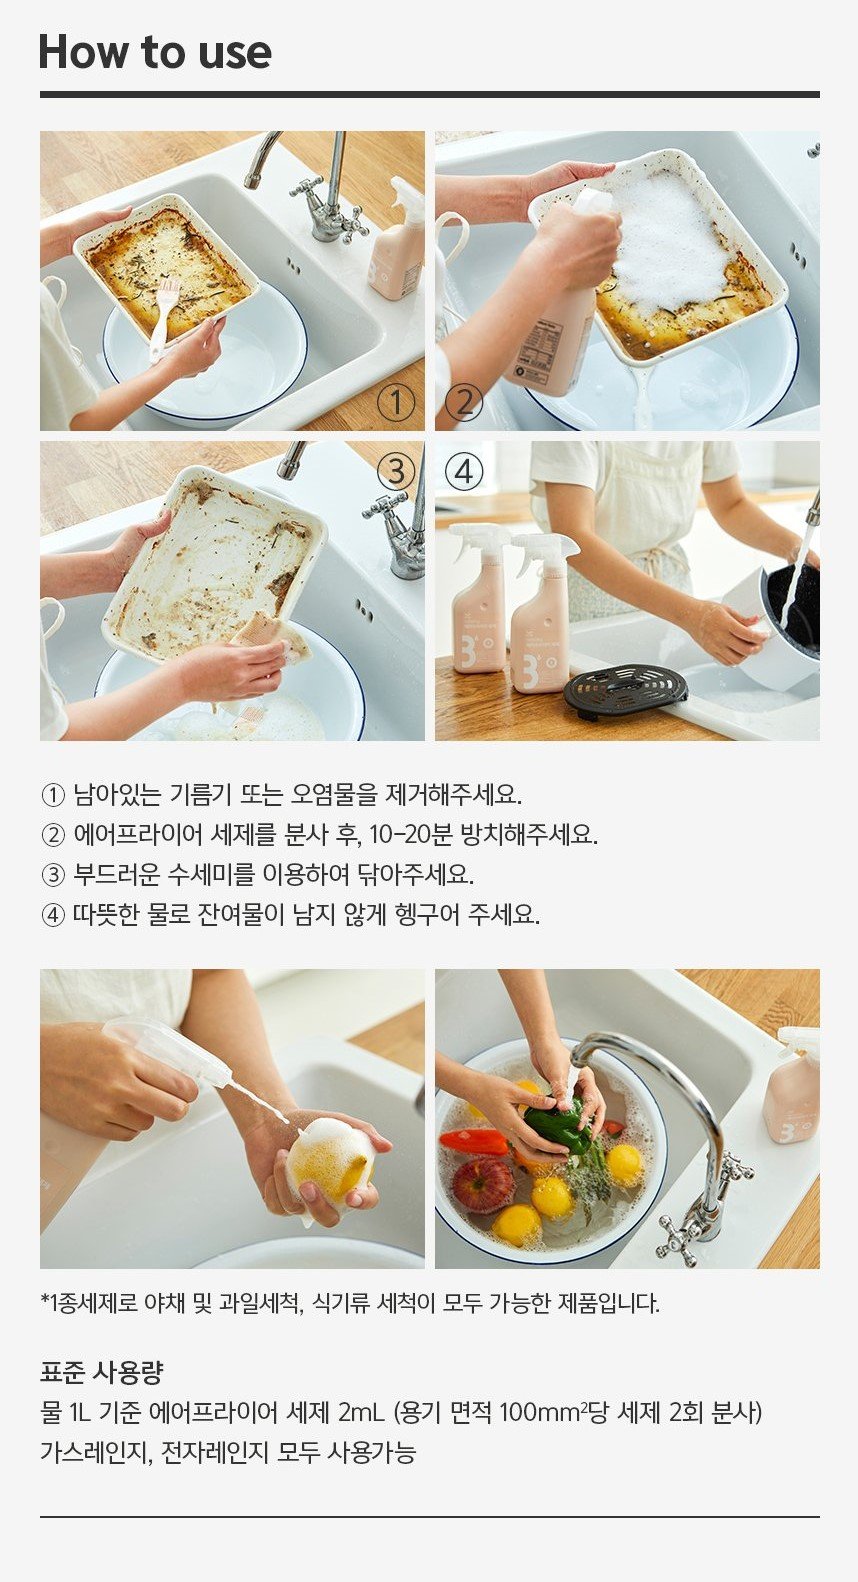 韓國食品-[Rebow] 氣炸鍋清潔劑 500ml